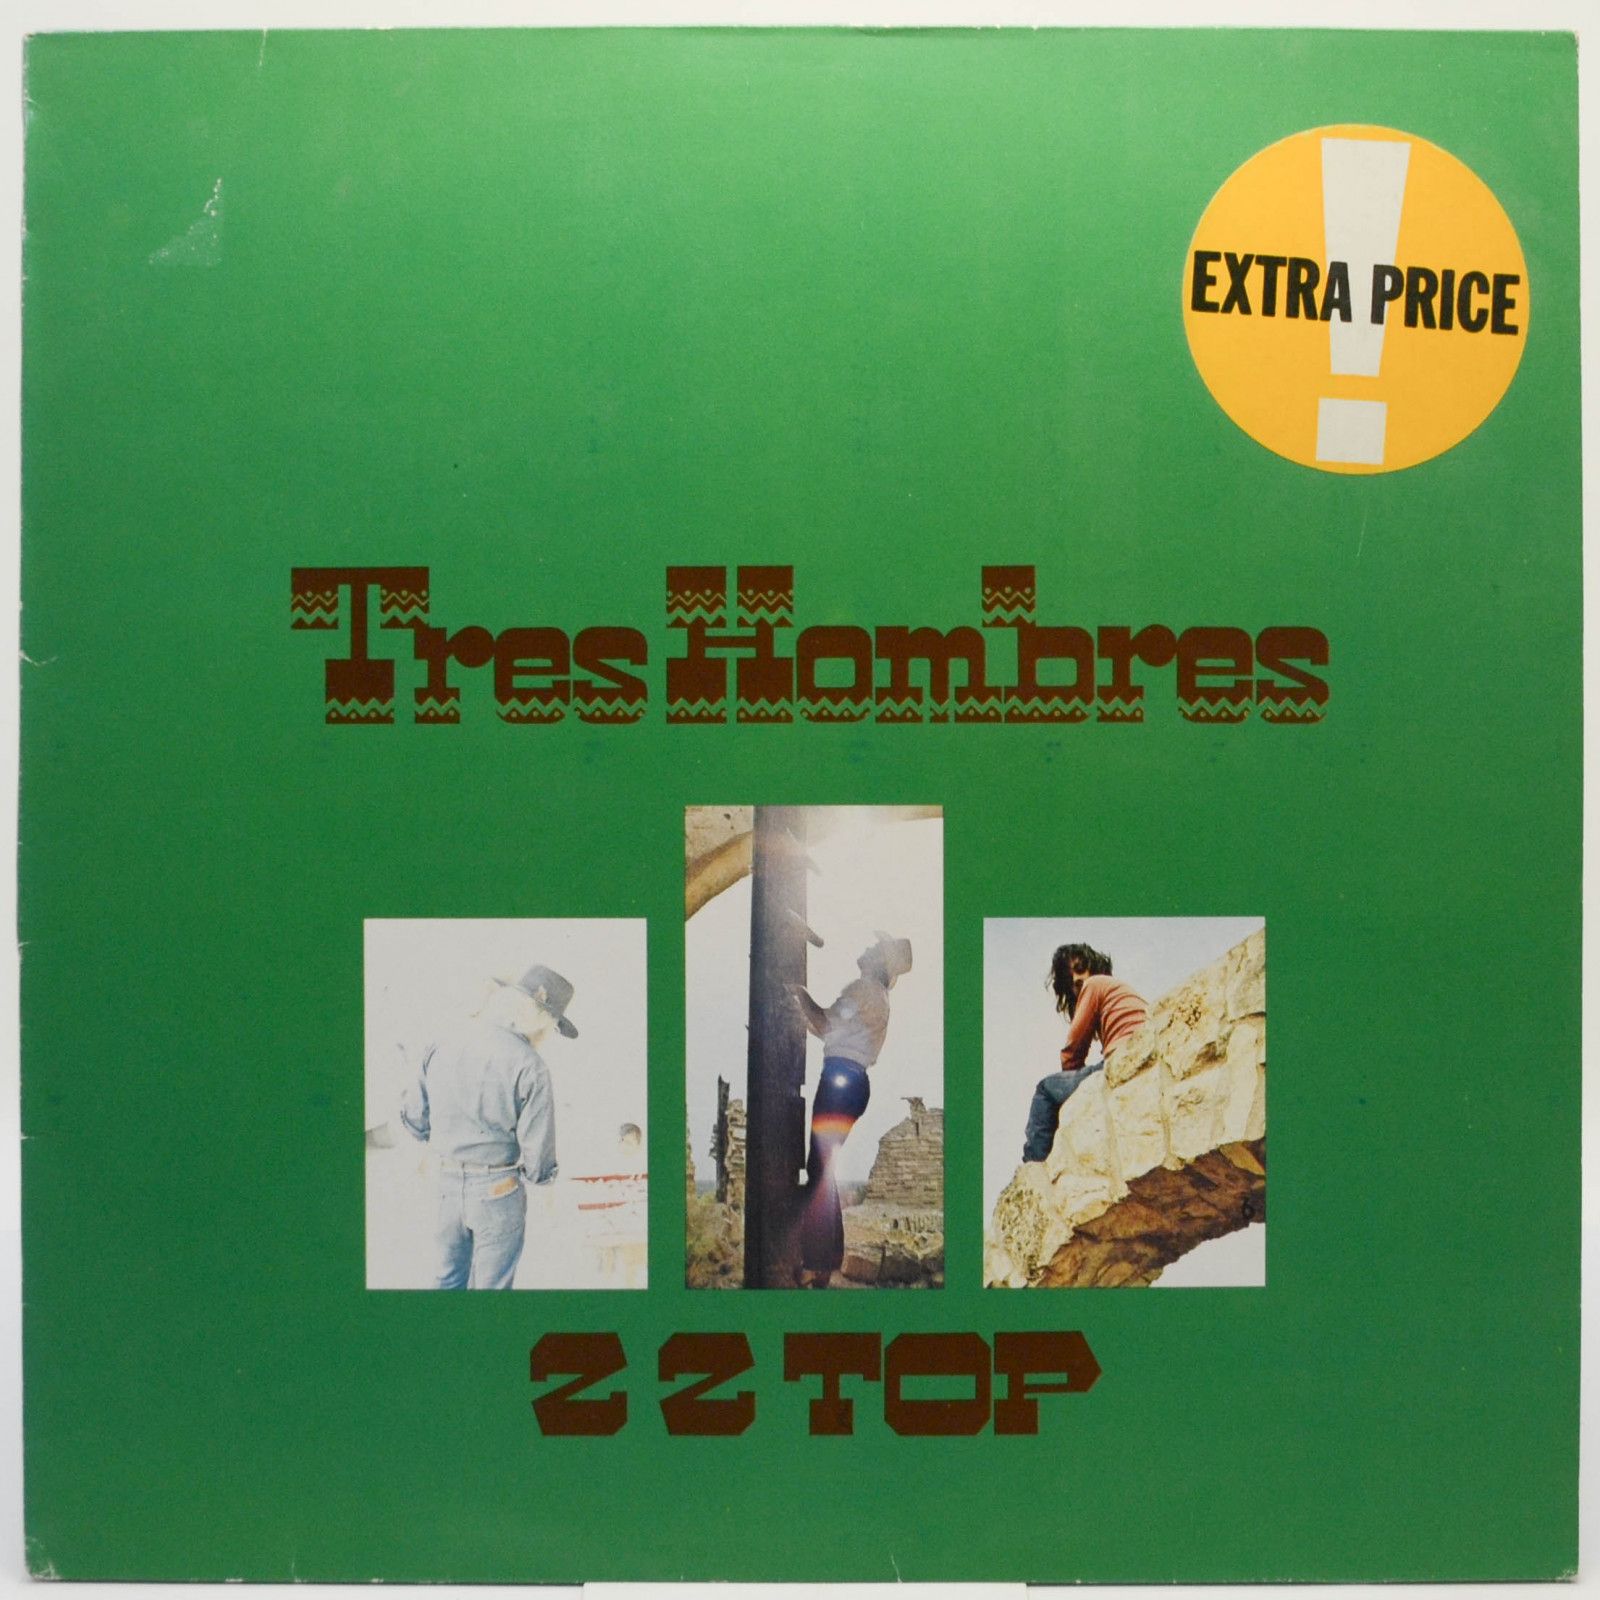 ZZ Top — Tres Hombres, 1983